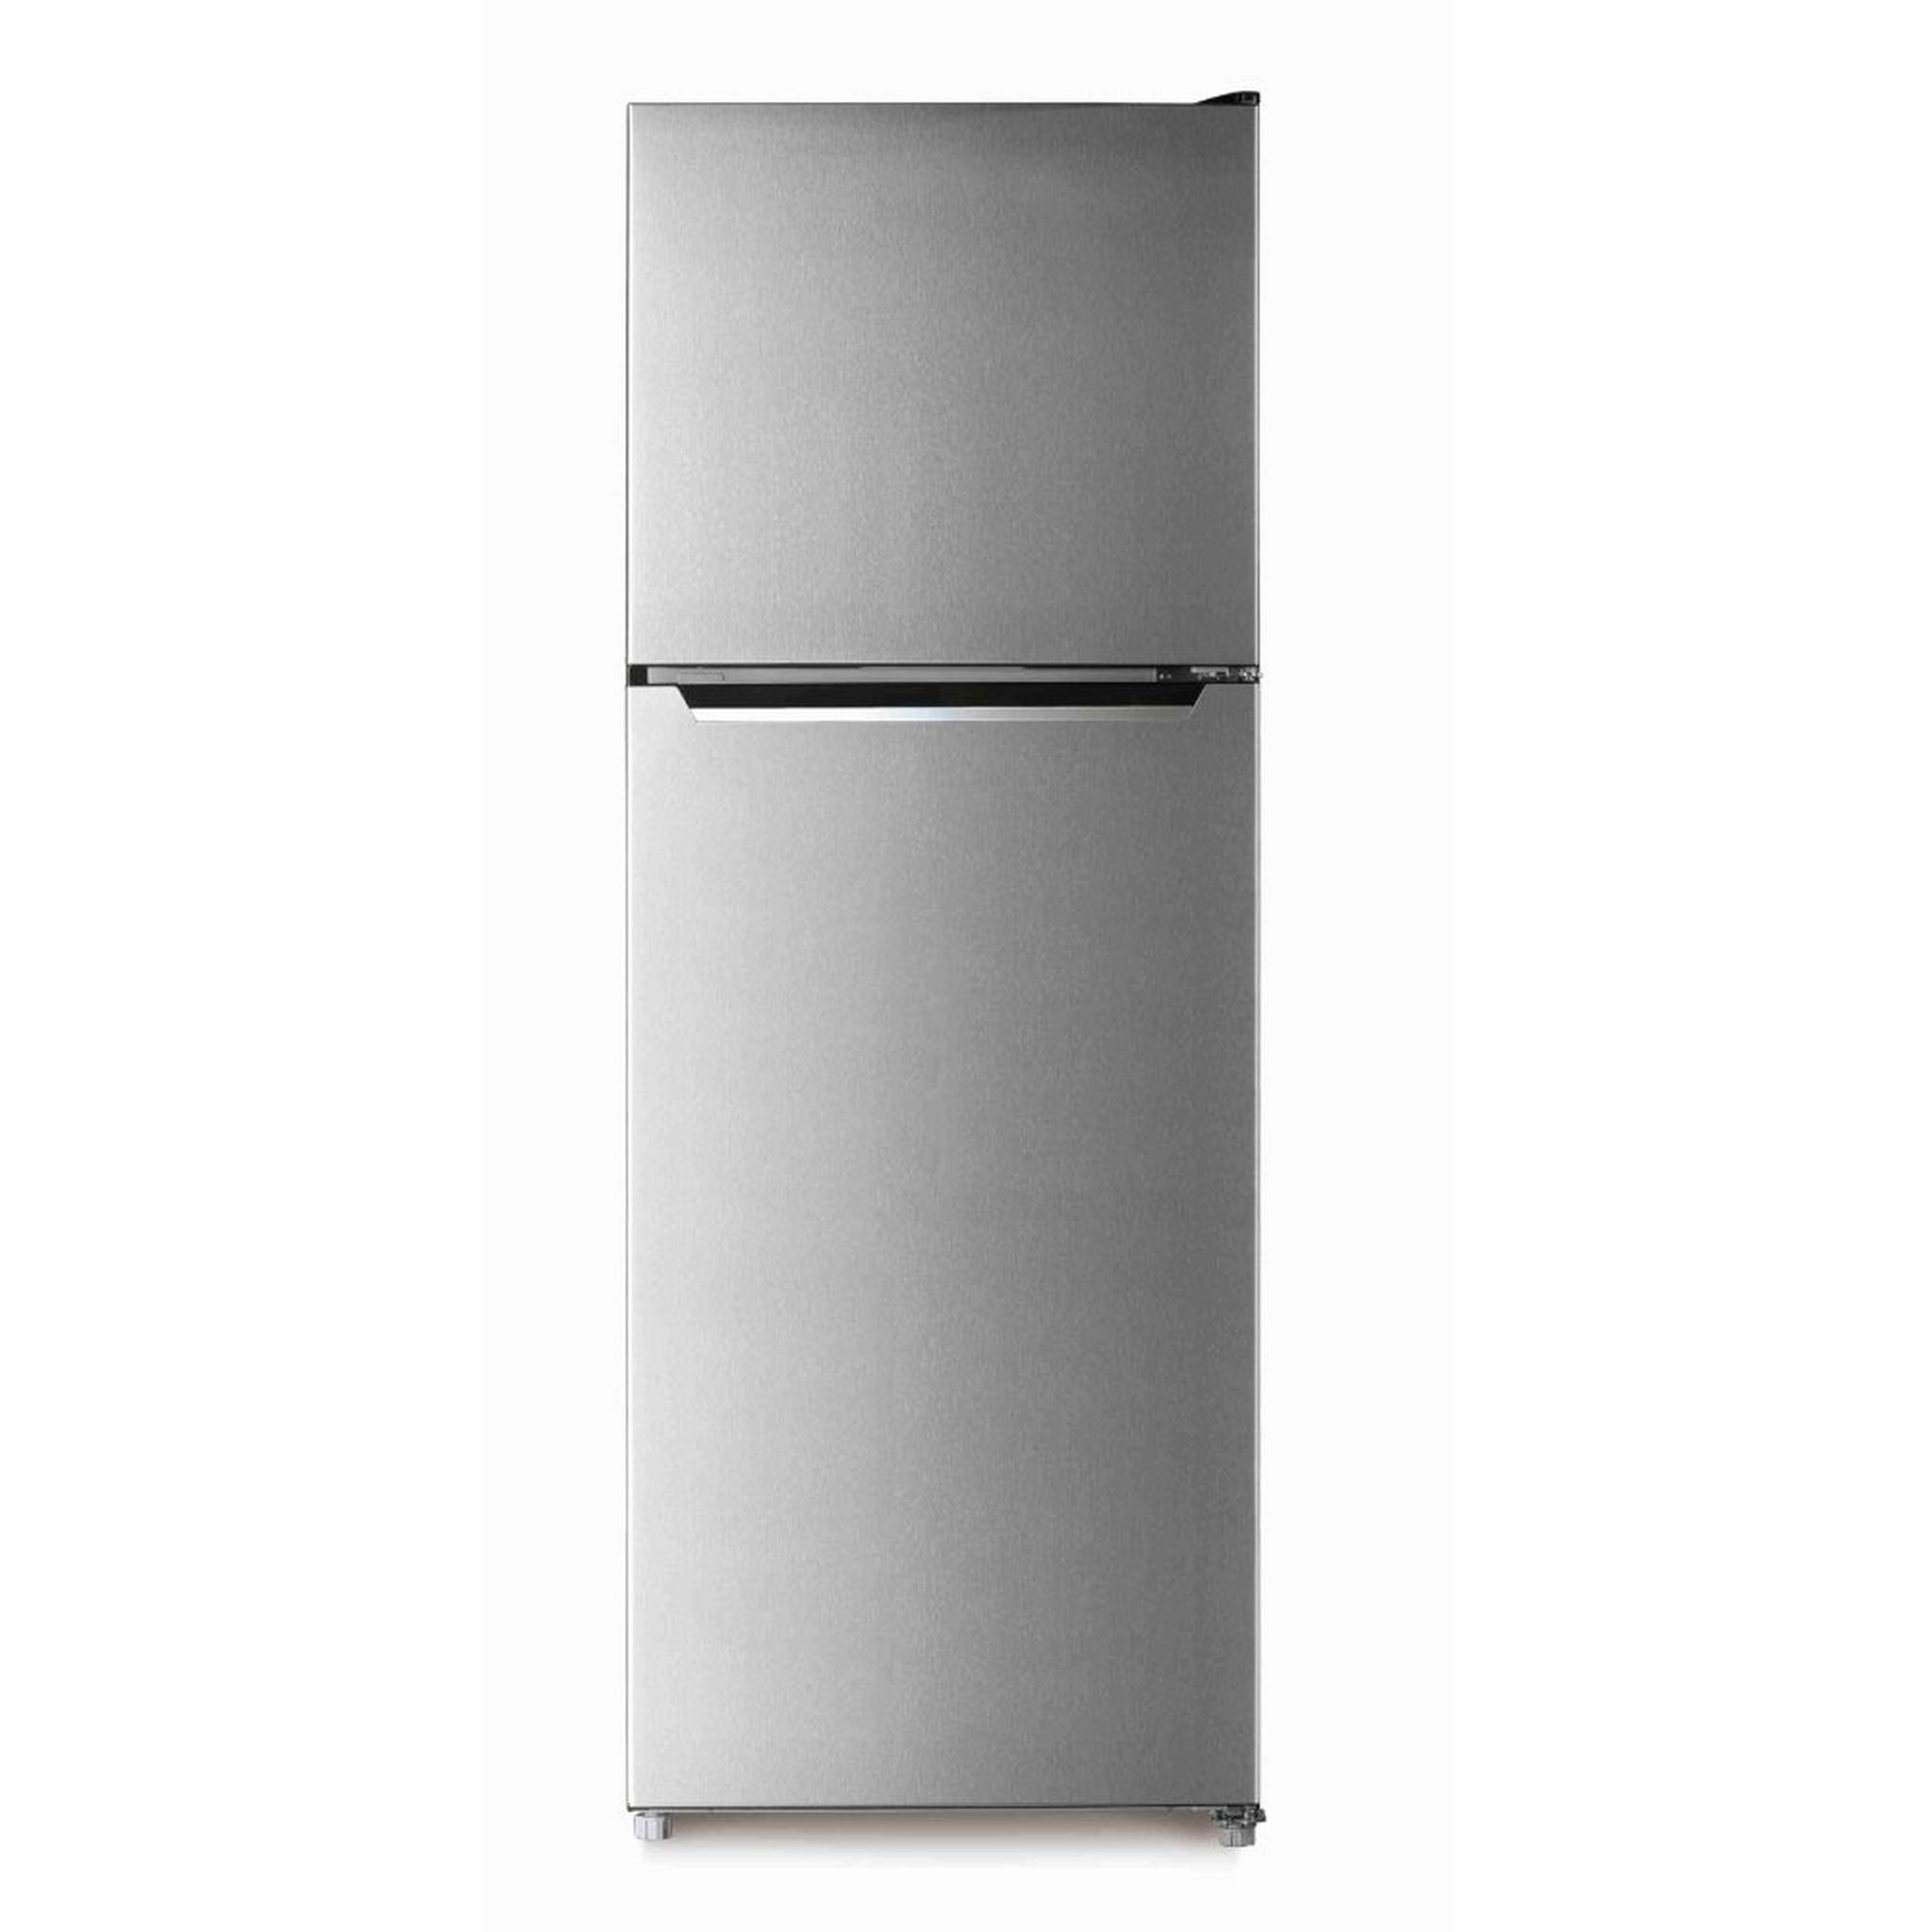 Wansa Top Mount Refrigerator, 13CFT, 365-Liters, WRTG-365-NFSSC52 - Stainless Steel